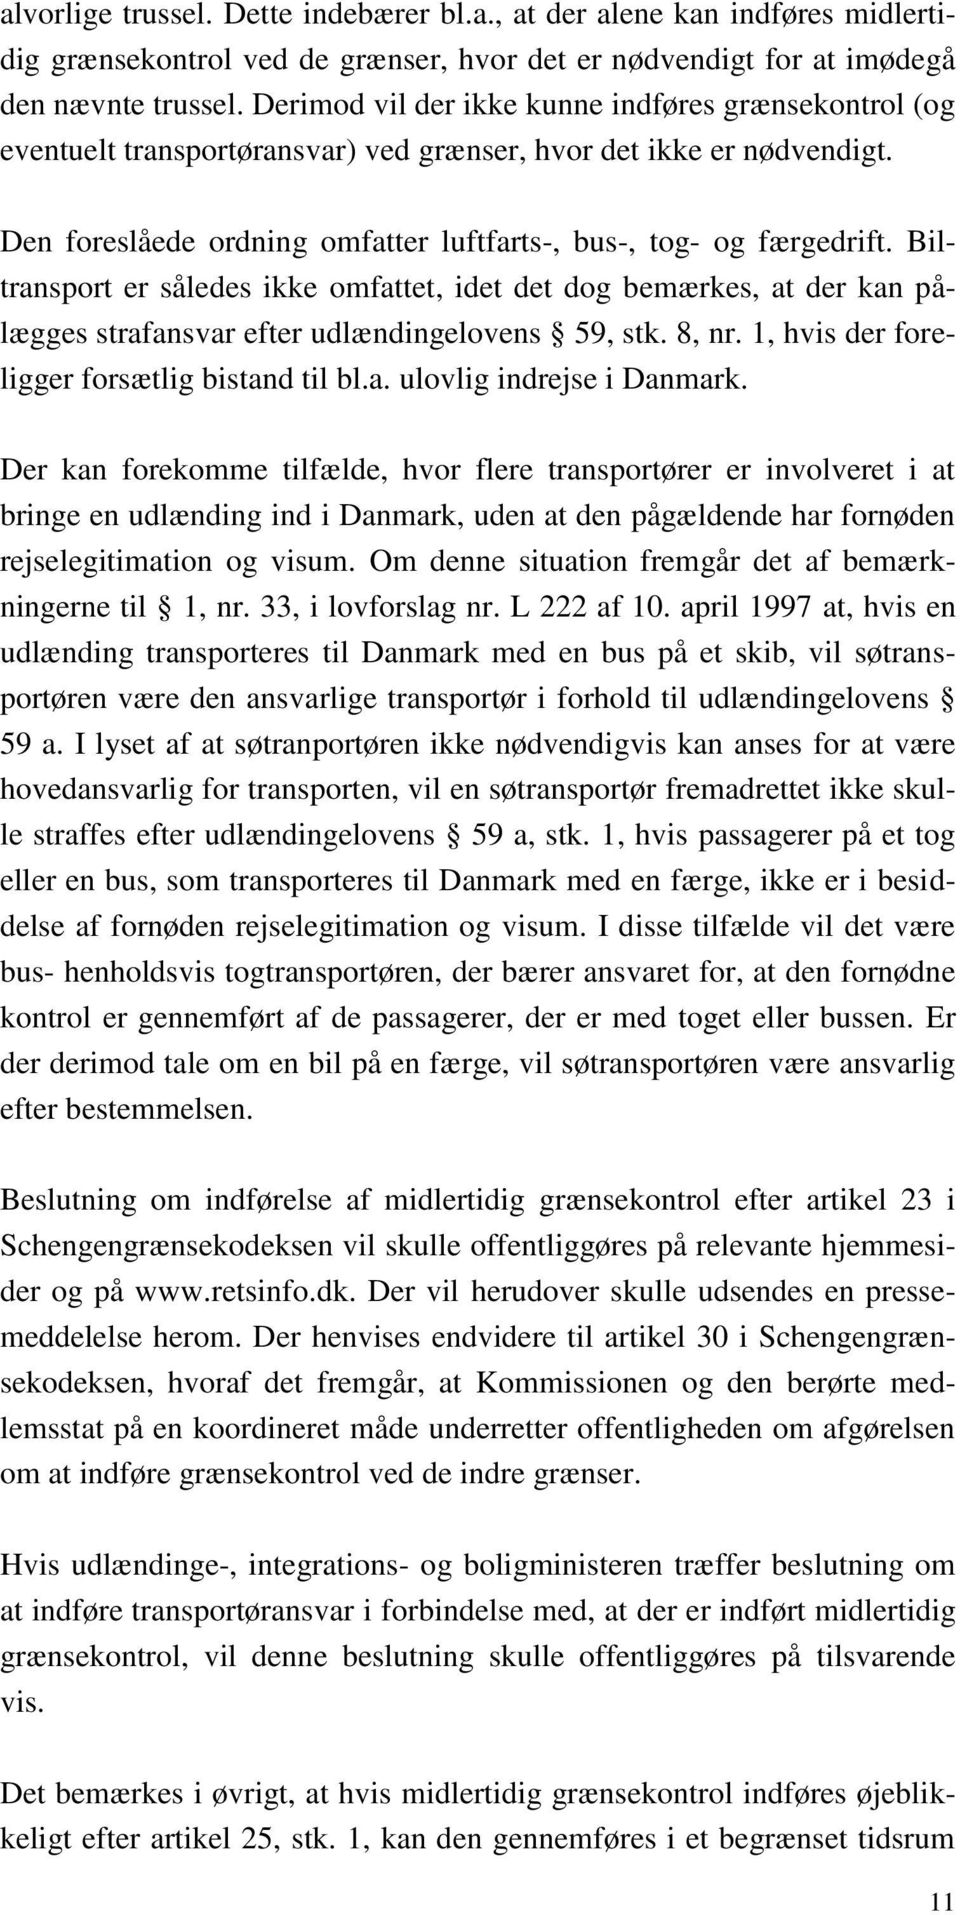 Biltransport er således ikke omfattet, idet det dog bemærkes, at der kan pålægges strafansvar efter udlændingelovens 59, stk. 8, nr. 1, hvis der foreligger forsætlig bistand til bl.a. ulovlig indrejse i Danmark.